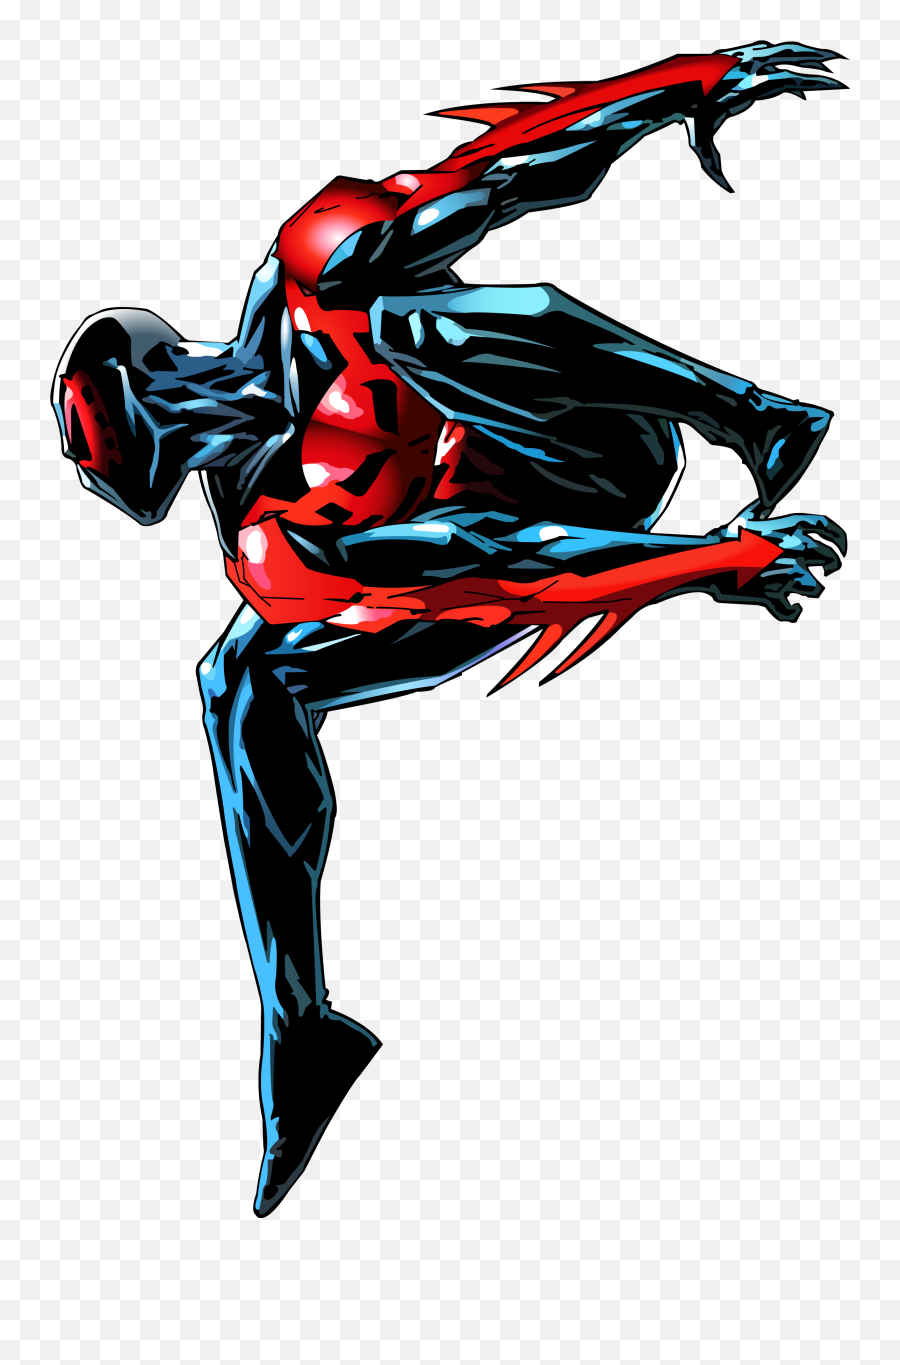 Imagenes De Spider Man 2099 Png Image - Spider Man Shattered Dimensions 2099,Spiderman 2099 Logo